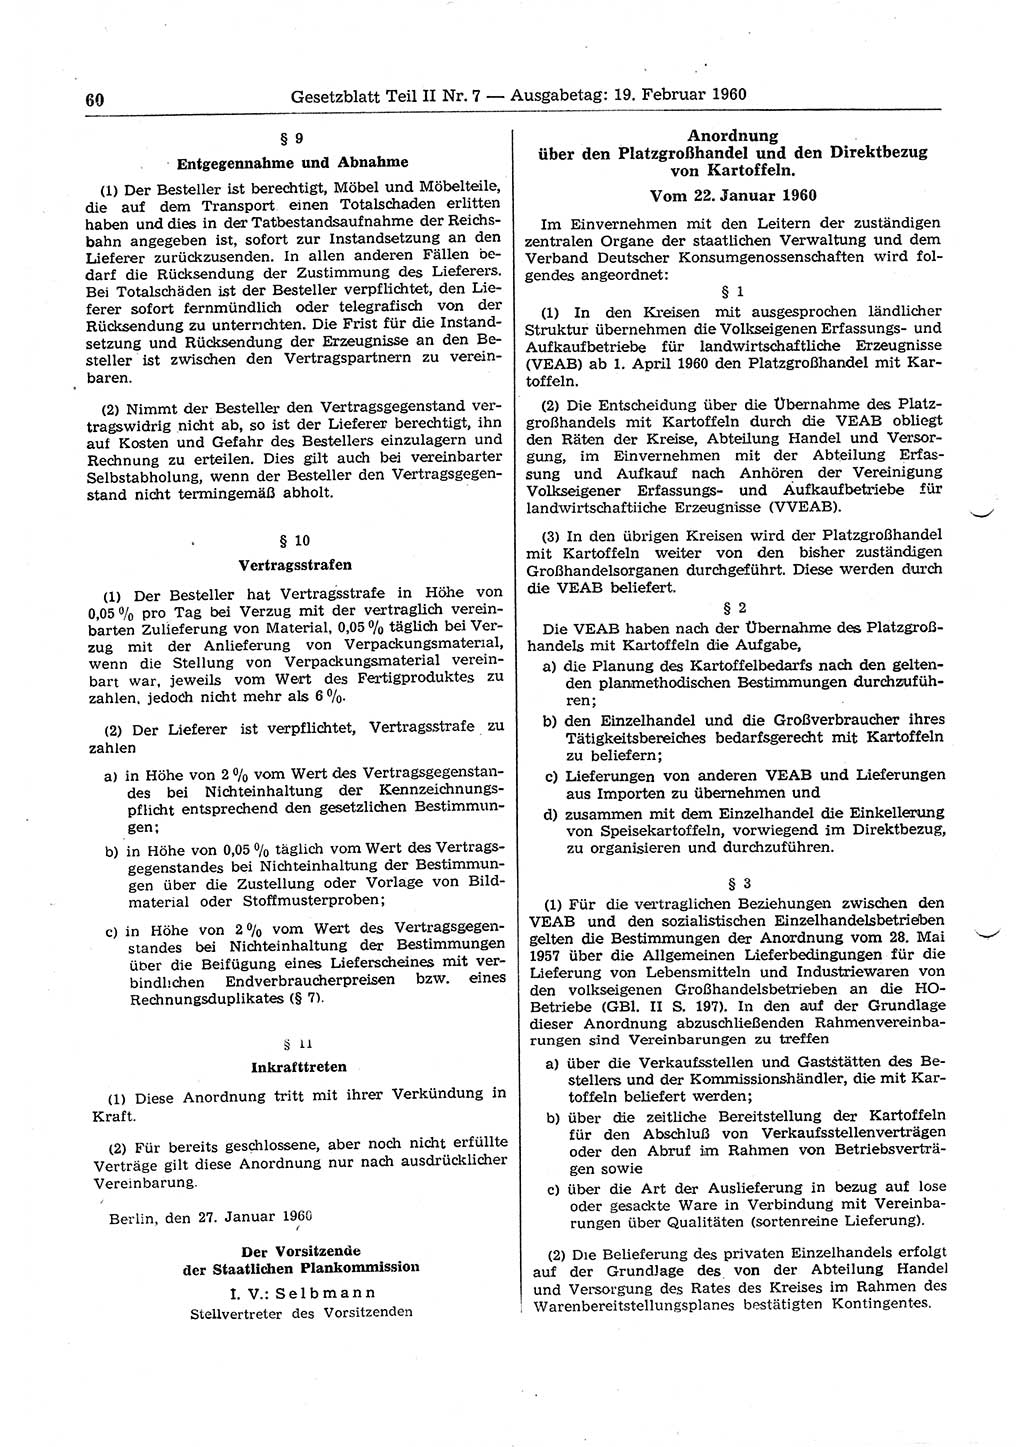 Gesetzblatt (GBl.) der Deutschen Demokratischen Republik (DDR) Teil ⅠⅠ 1960, Seite 60 (GBl. DDR ⅠⅠ 1960, S. 60)